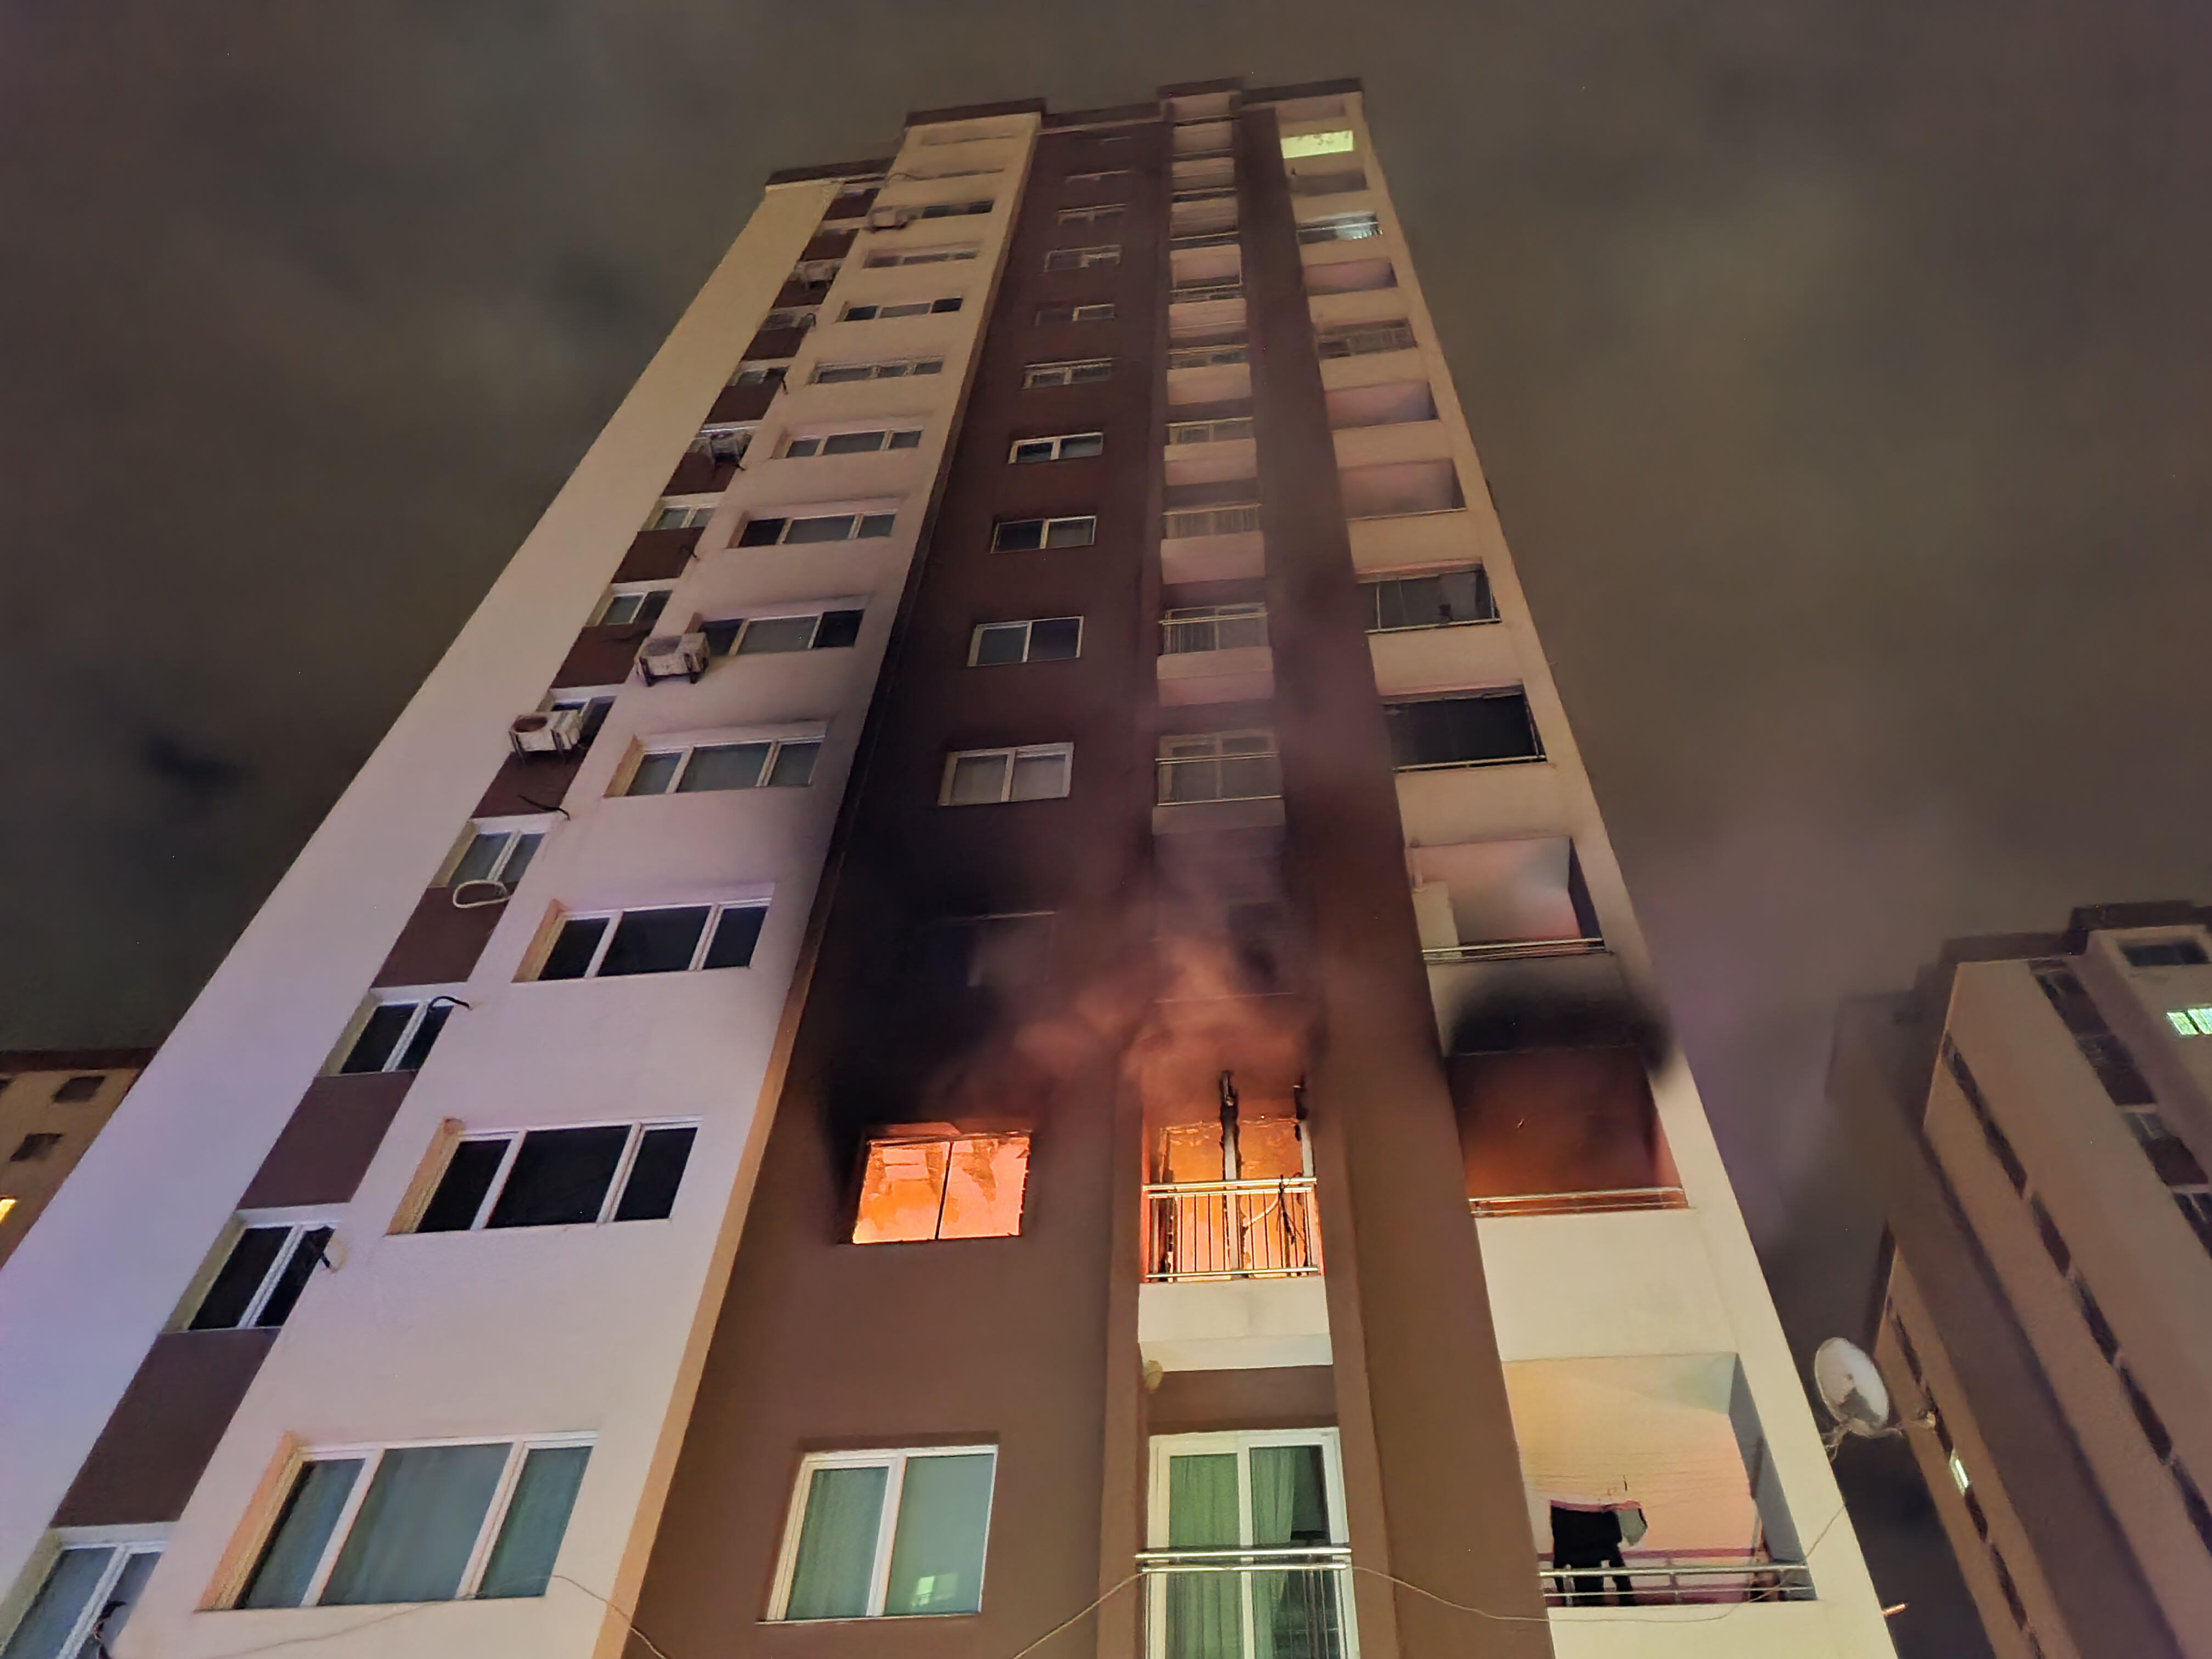 Komşusunun evi yanan kadın, sığındığı balkondan düşerek yaralandı